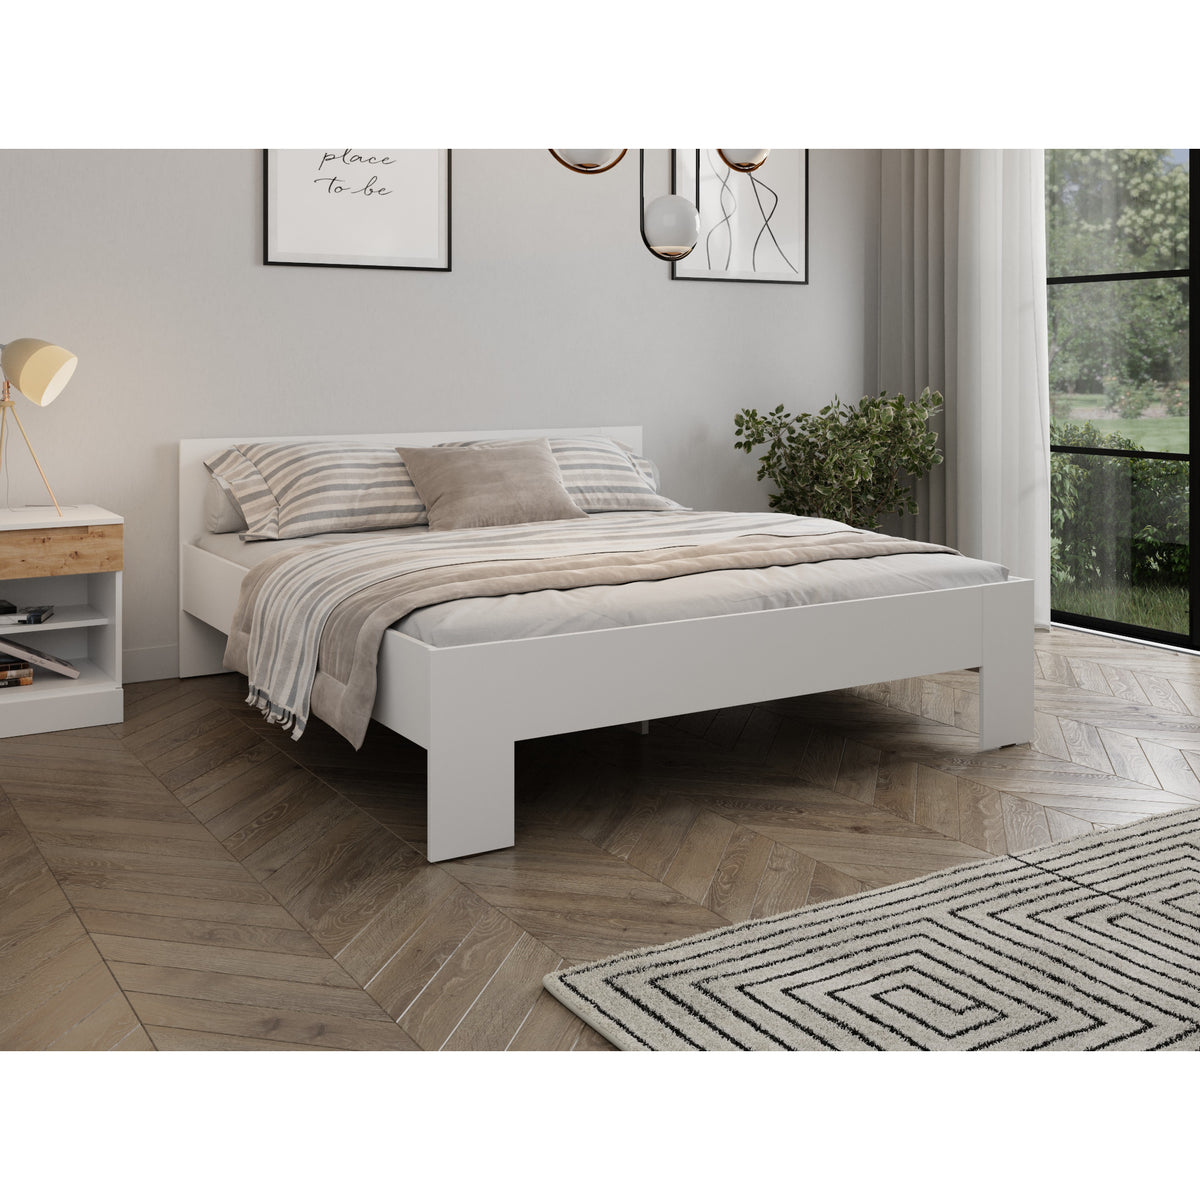 Drevená posteľ Limpo 180x200, biela, bez matraca a roštu